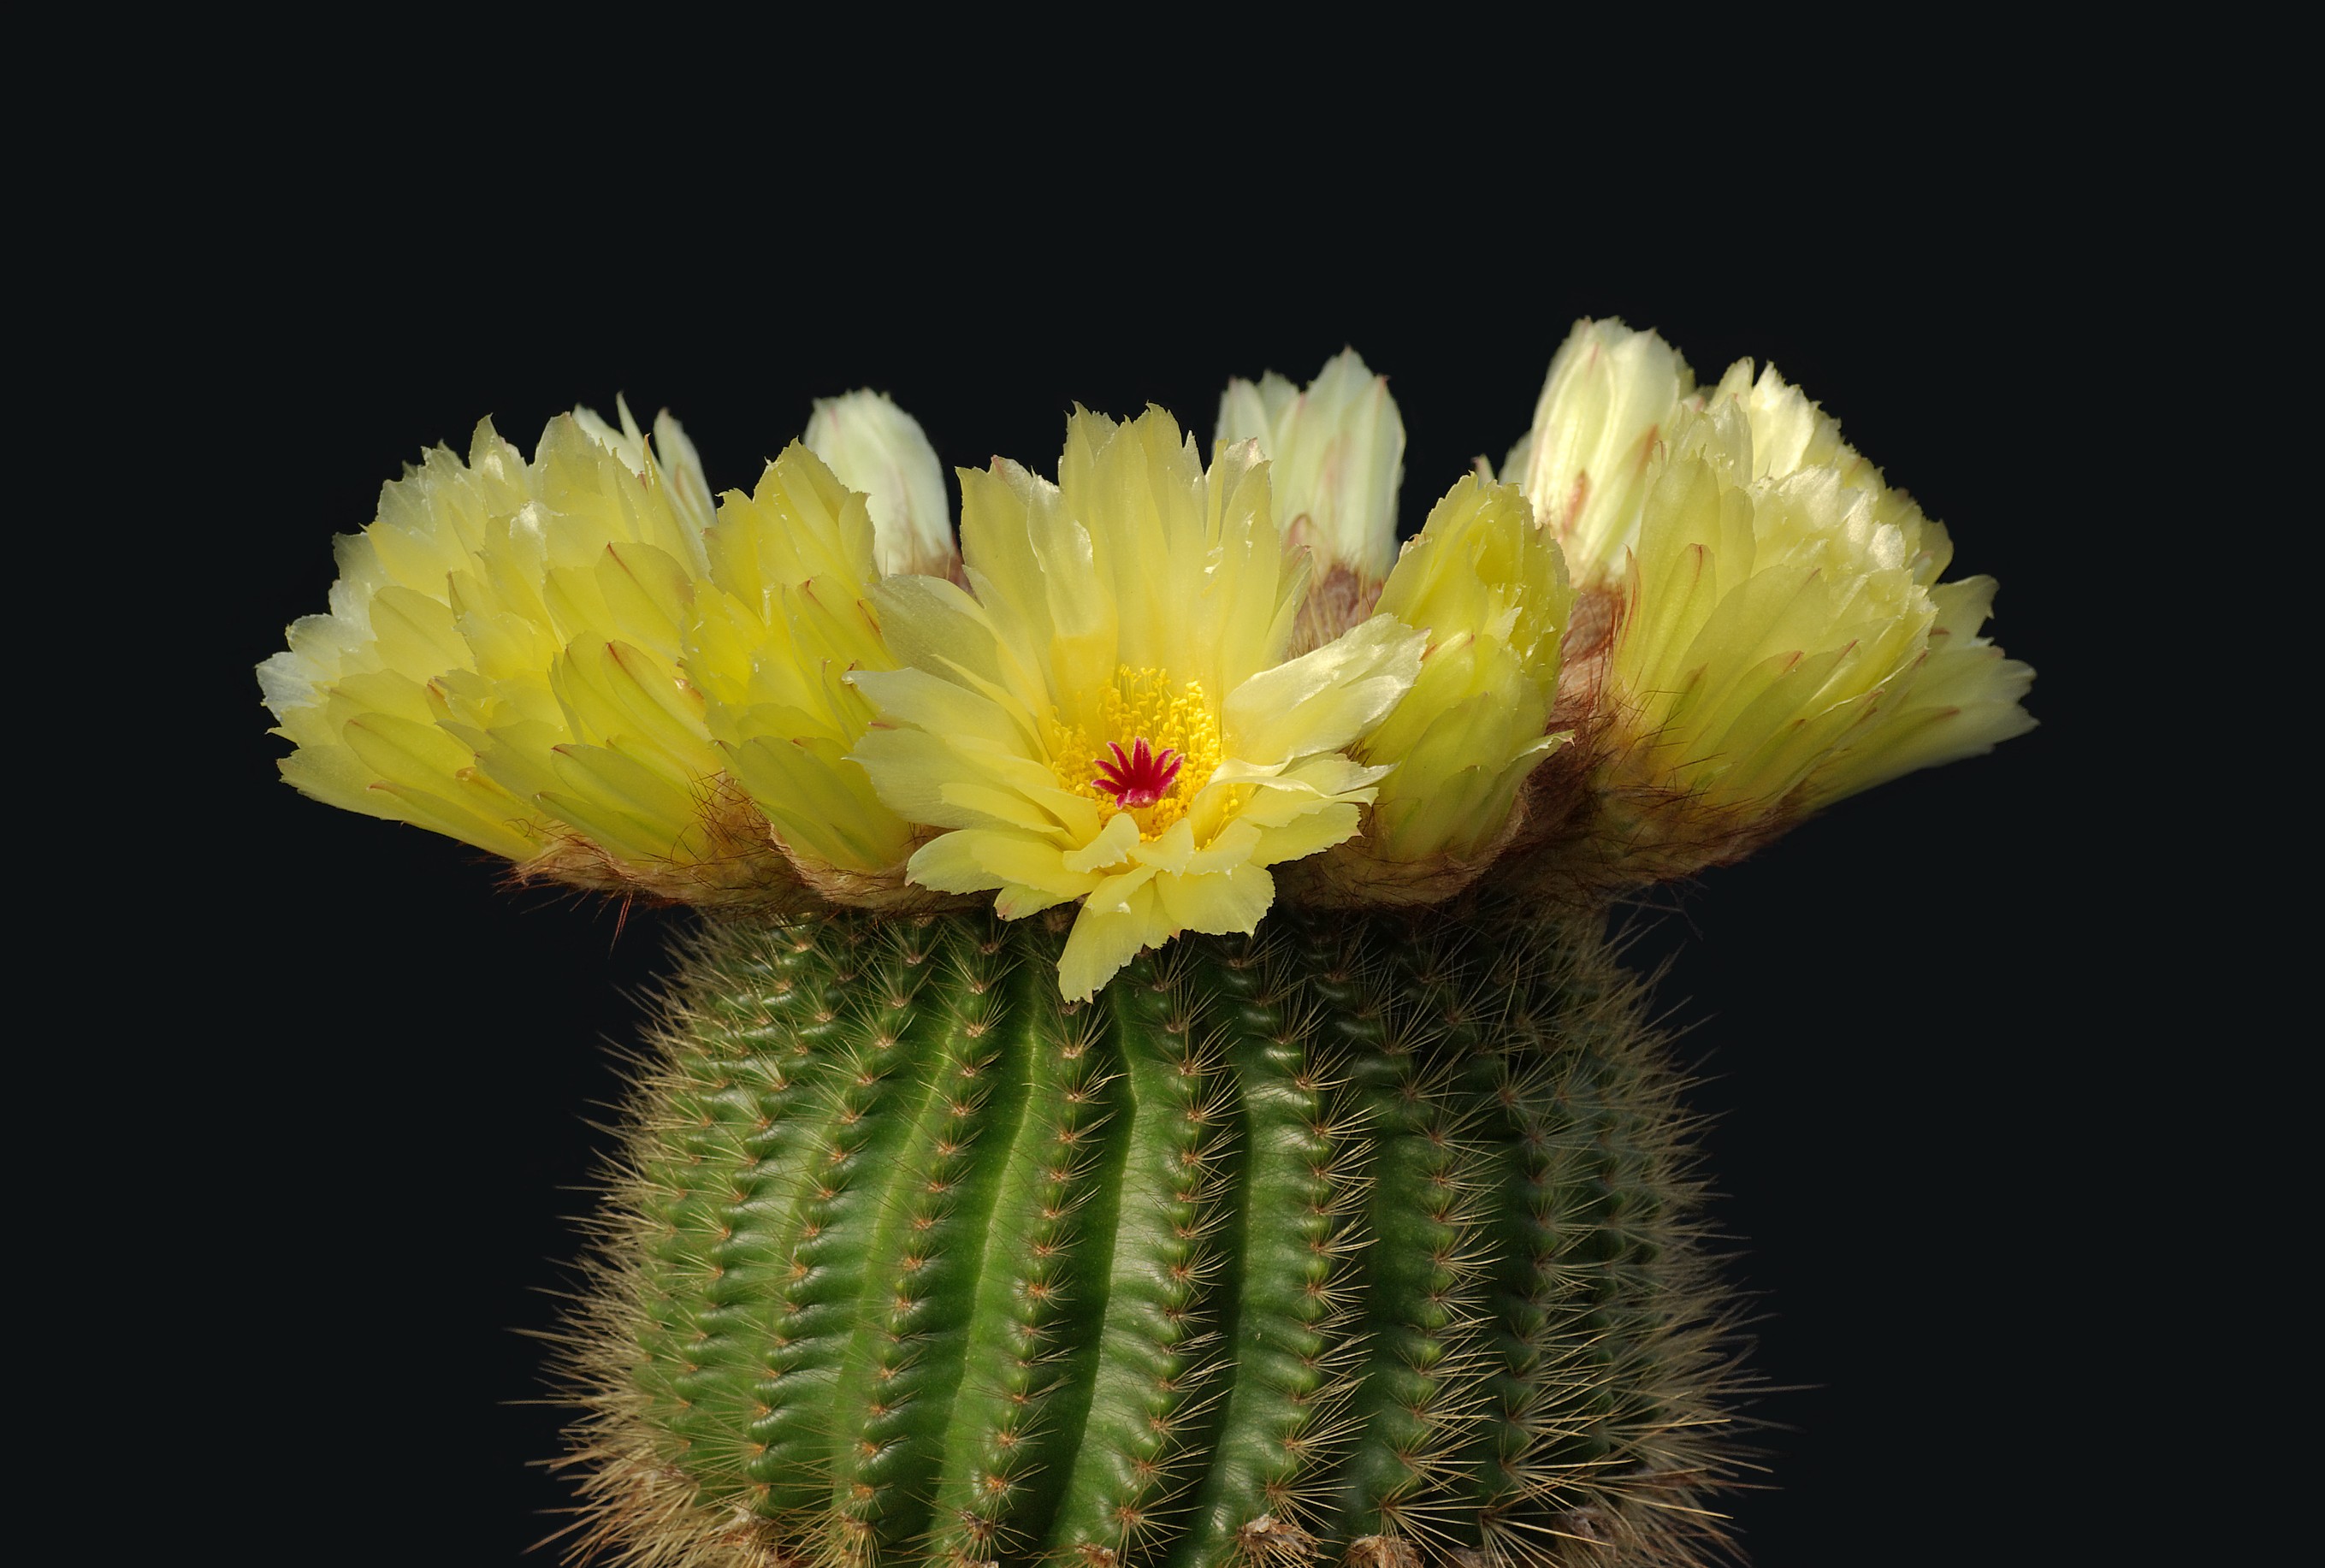 nature, flowers, plants, cactus, cactus flowers - desktop wallpaper